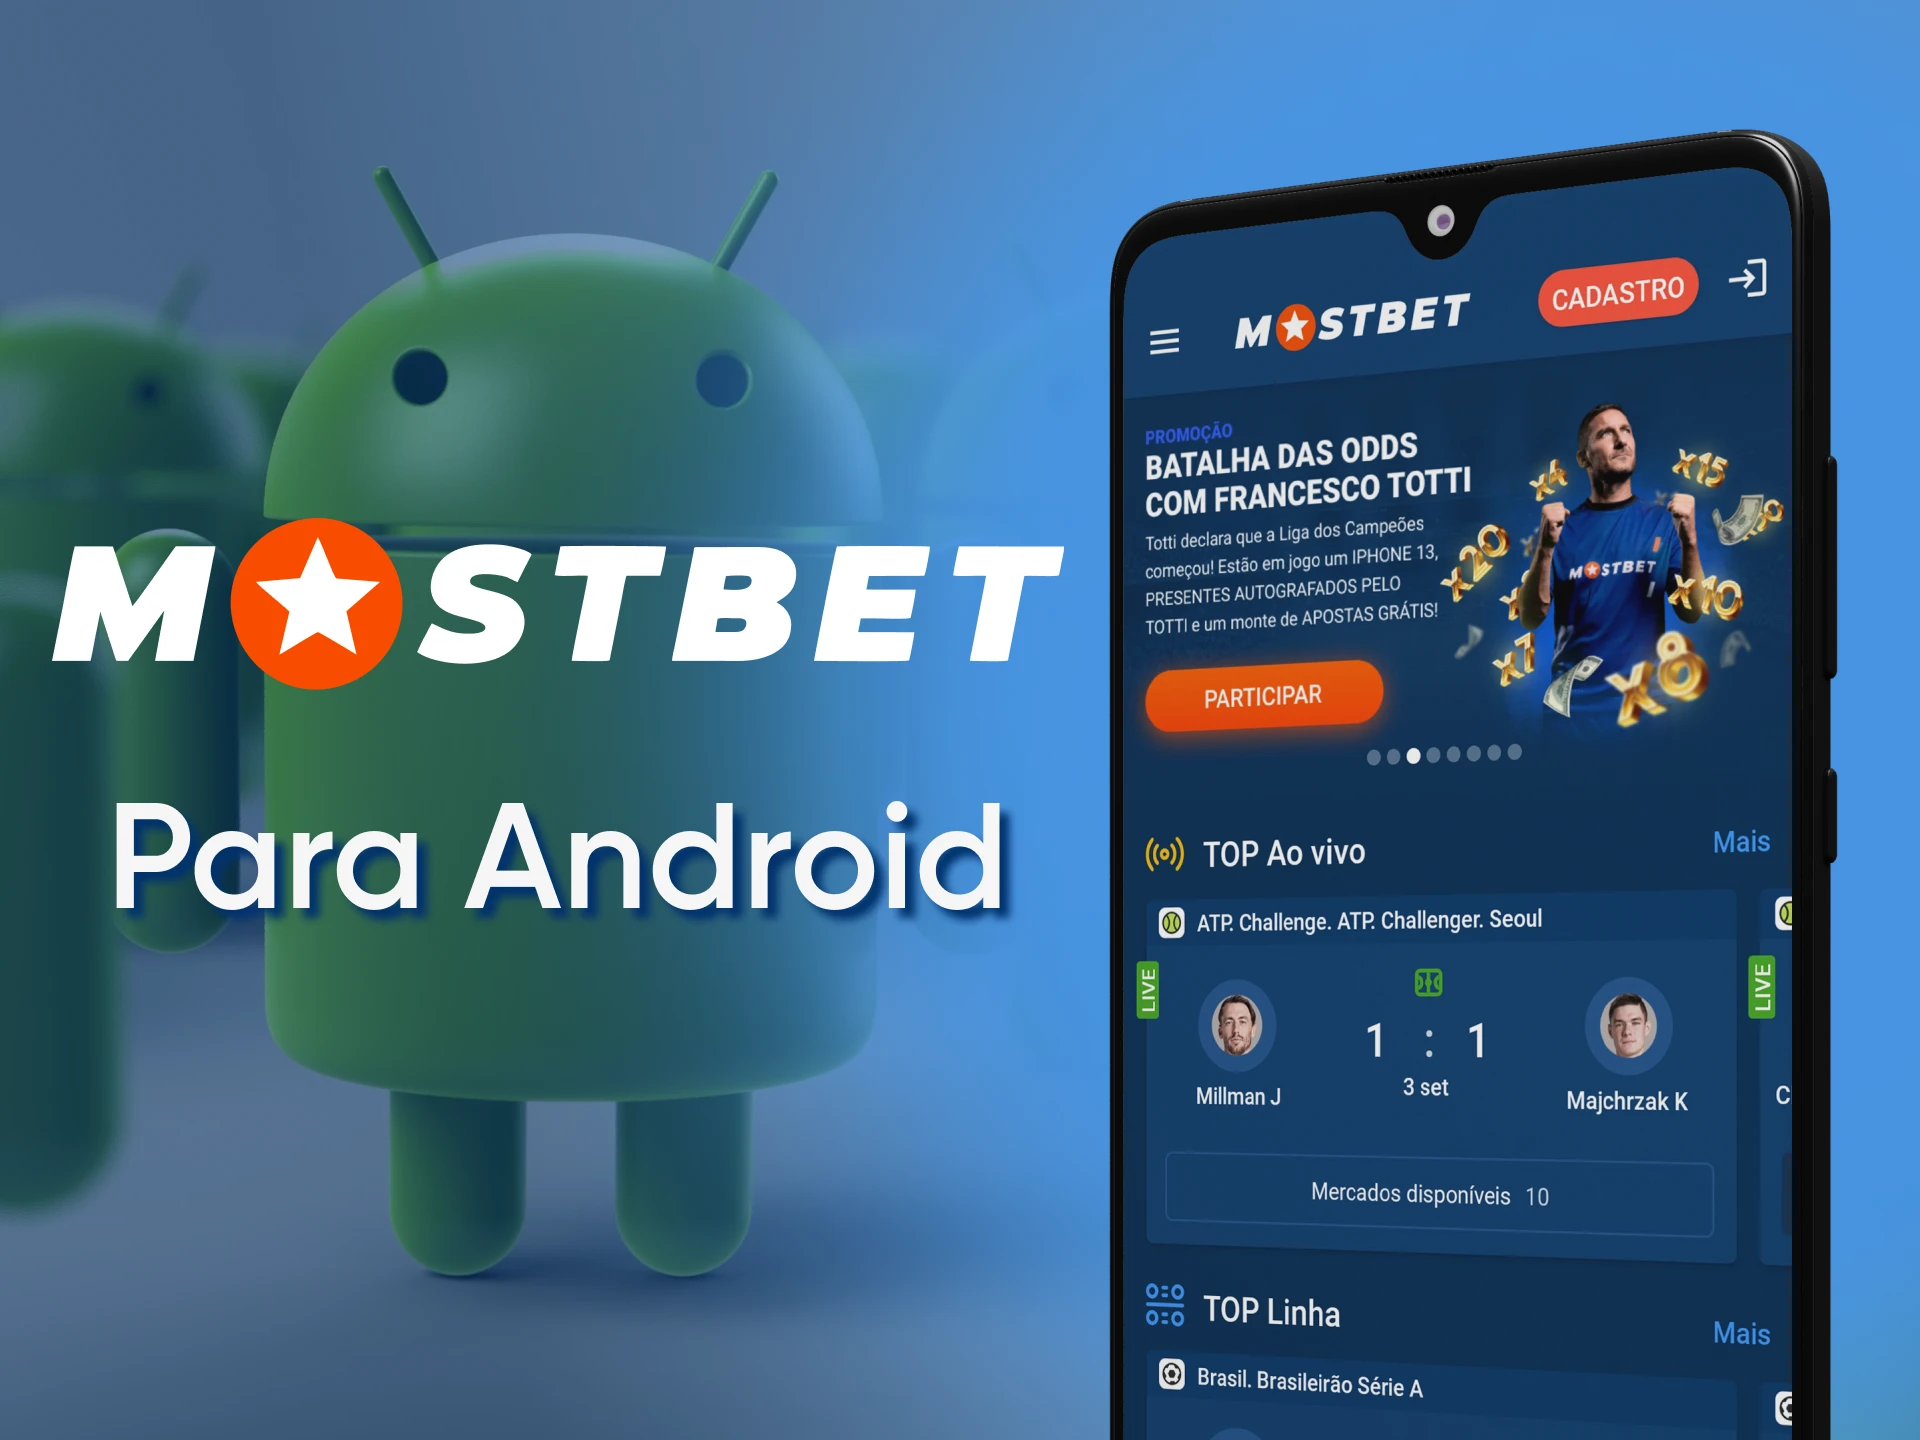 A versão Android do aplicativo móvel Mostbet tem os mesmos recursos que as versões para outras plataformas.